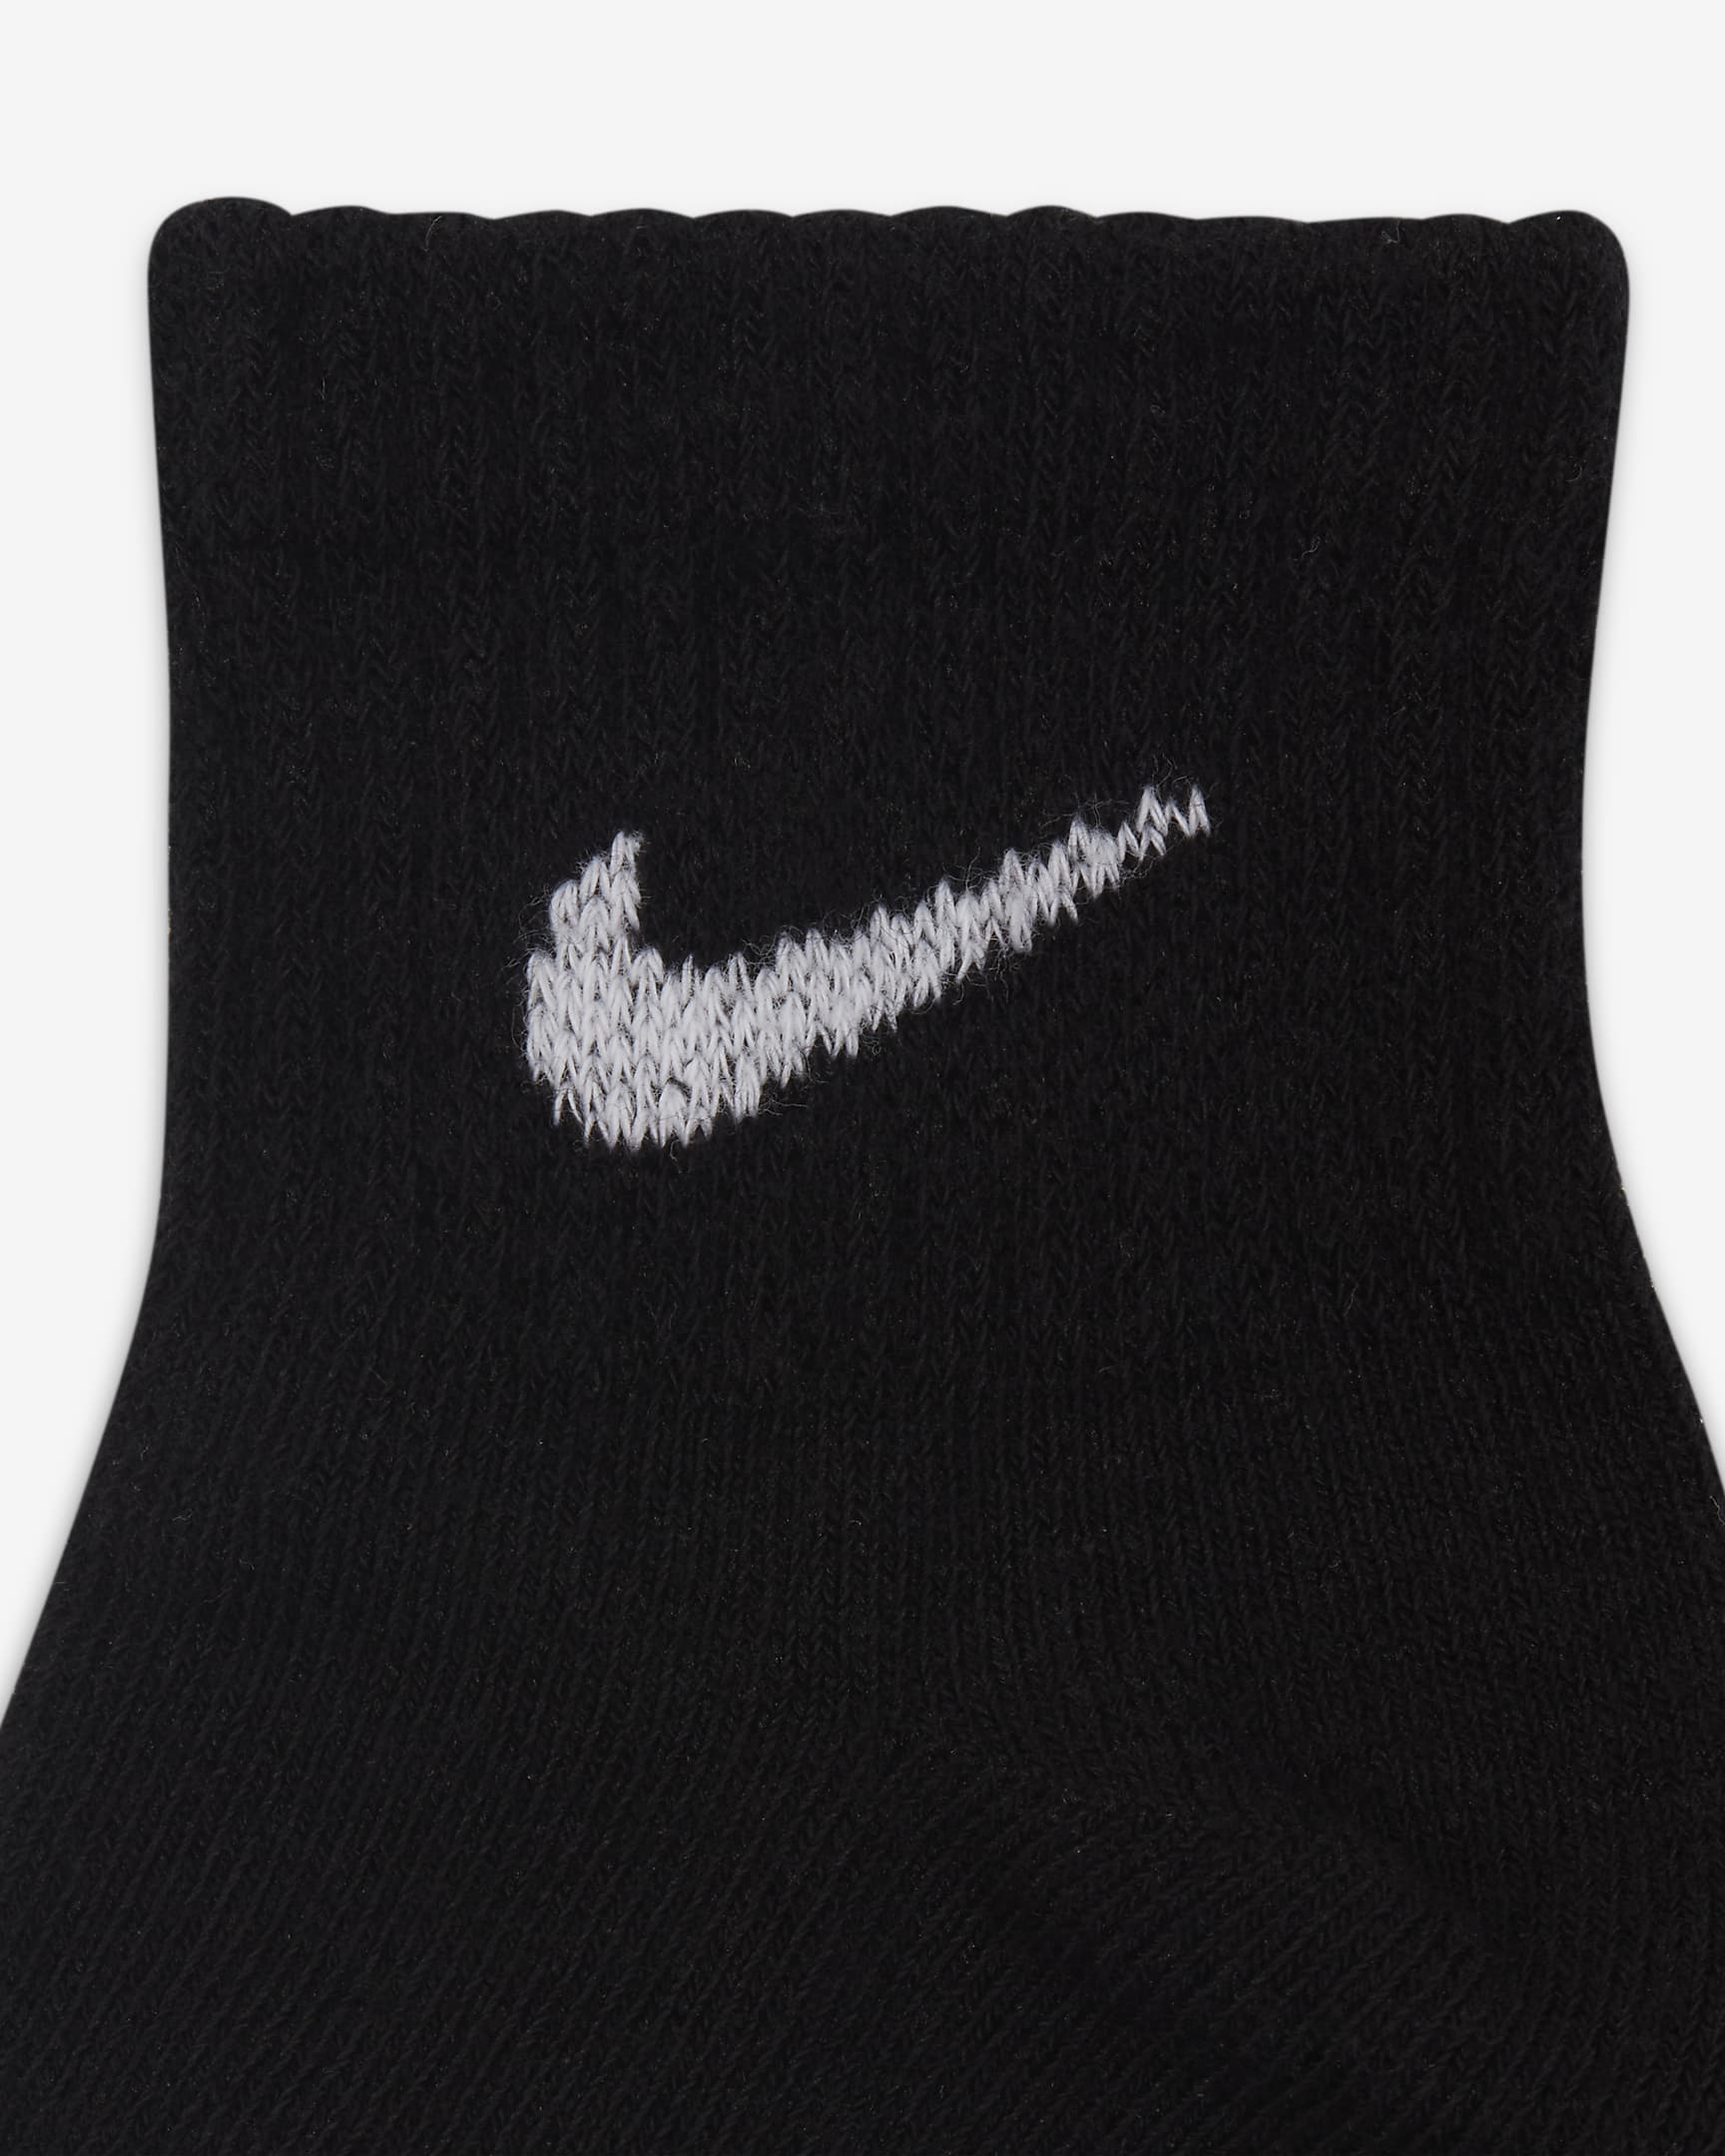 Nike Baby Gripper Ankle Socks (3 Pairs). Nike JP